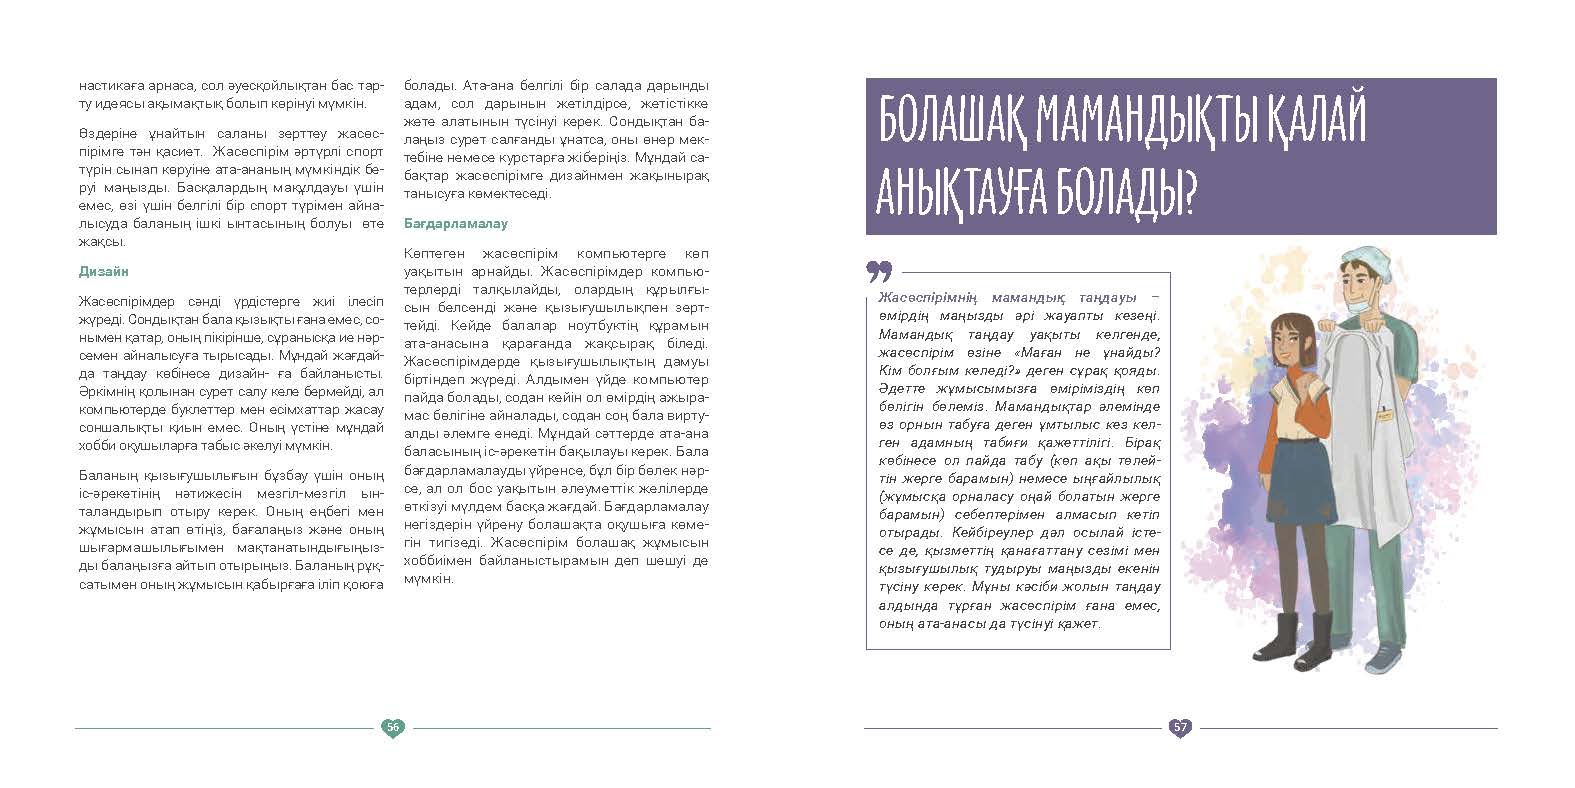 EVAC brochure KAZ (29).jpg